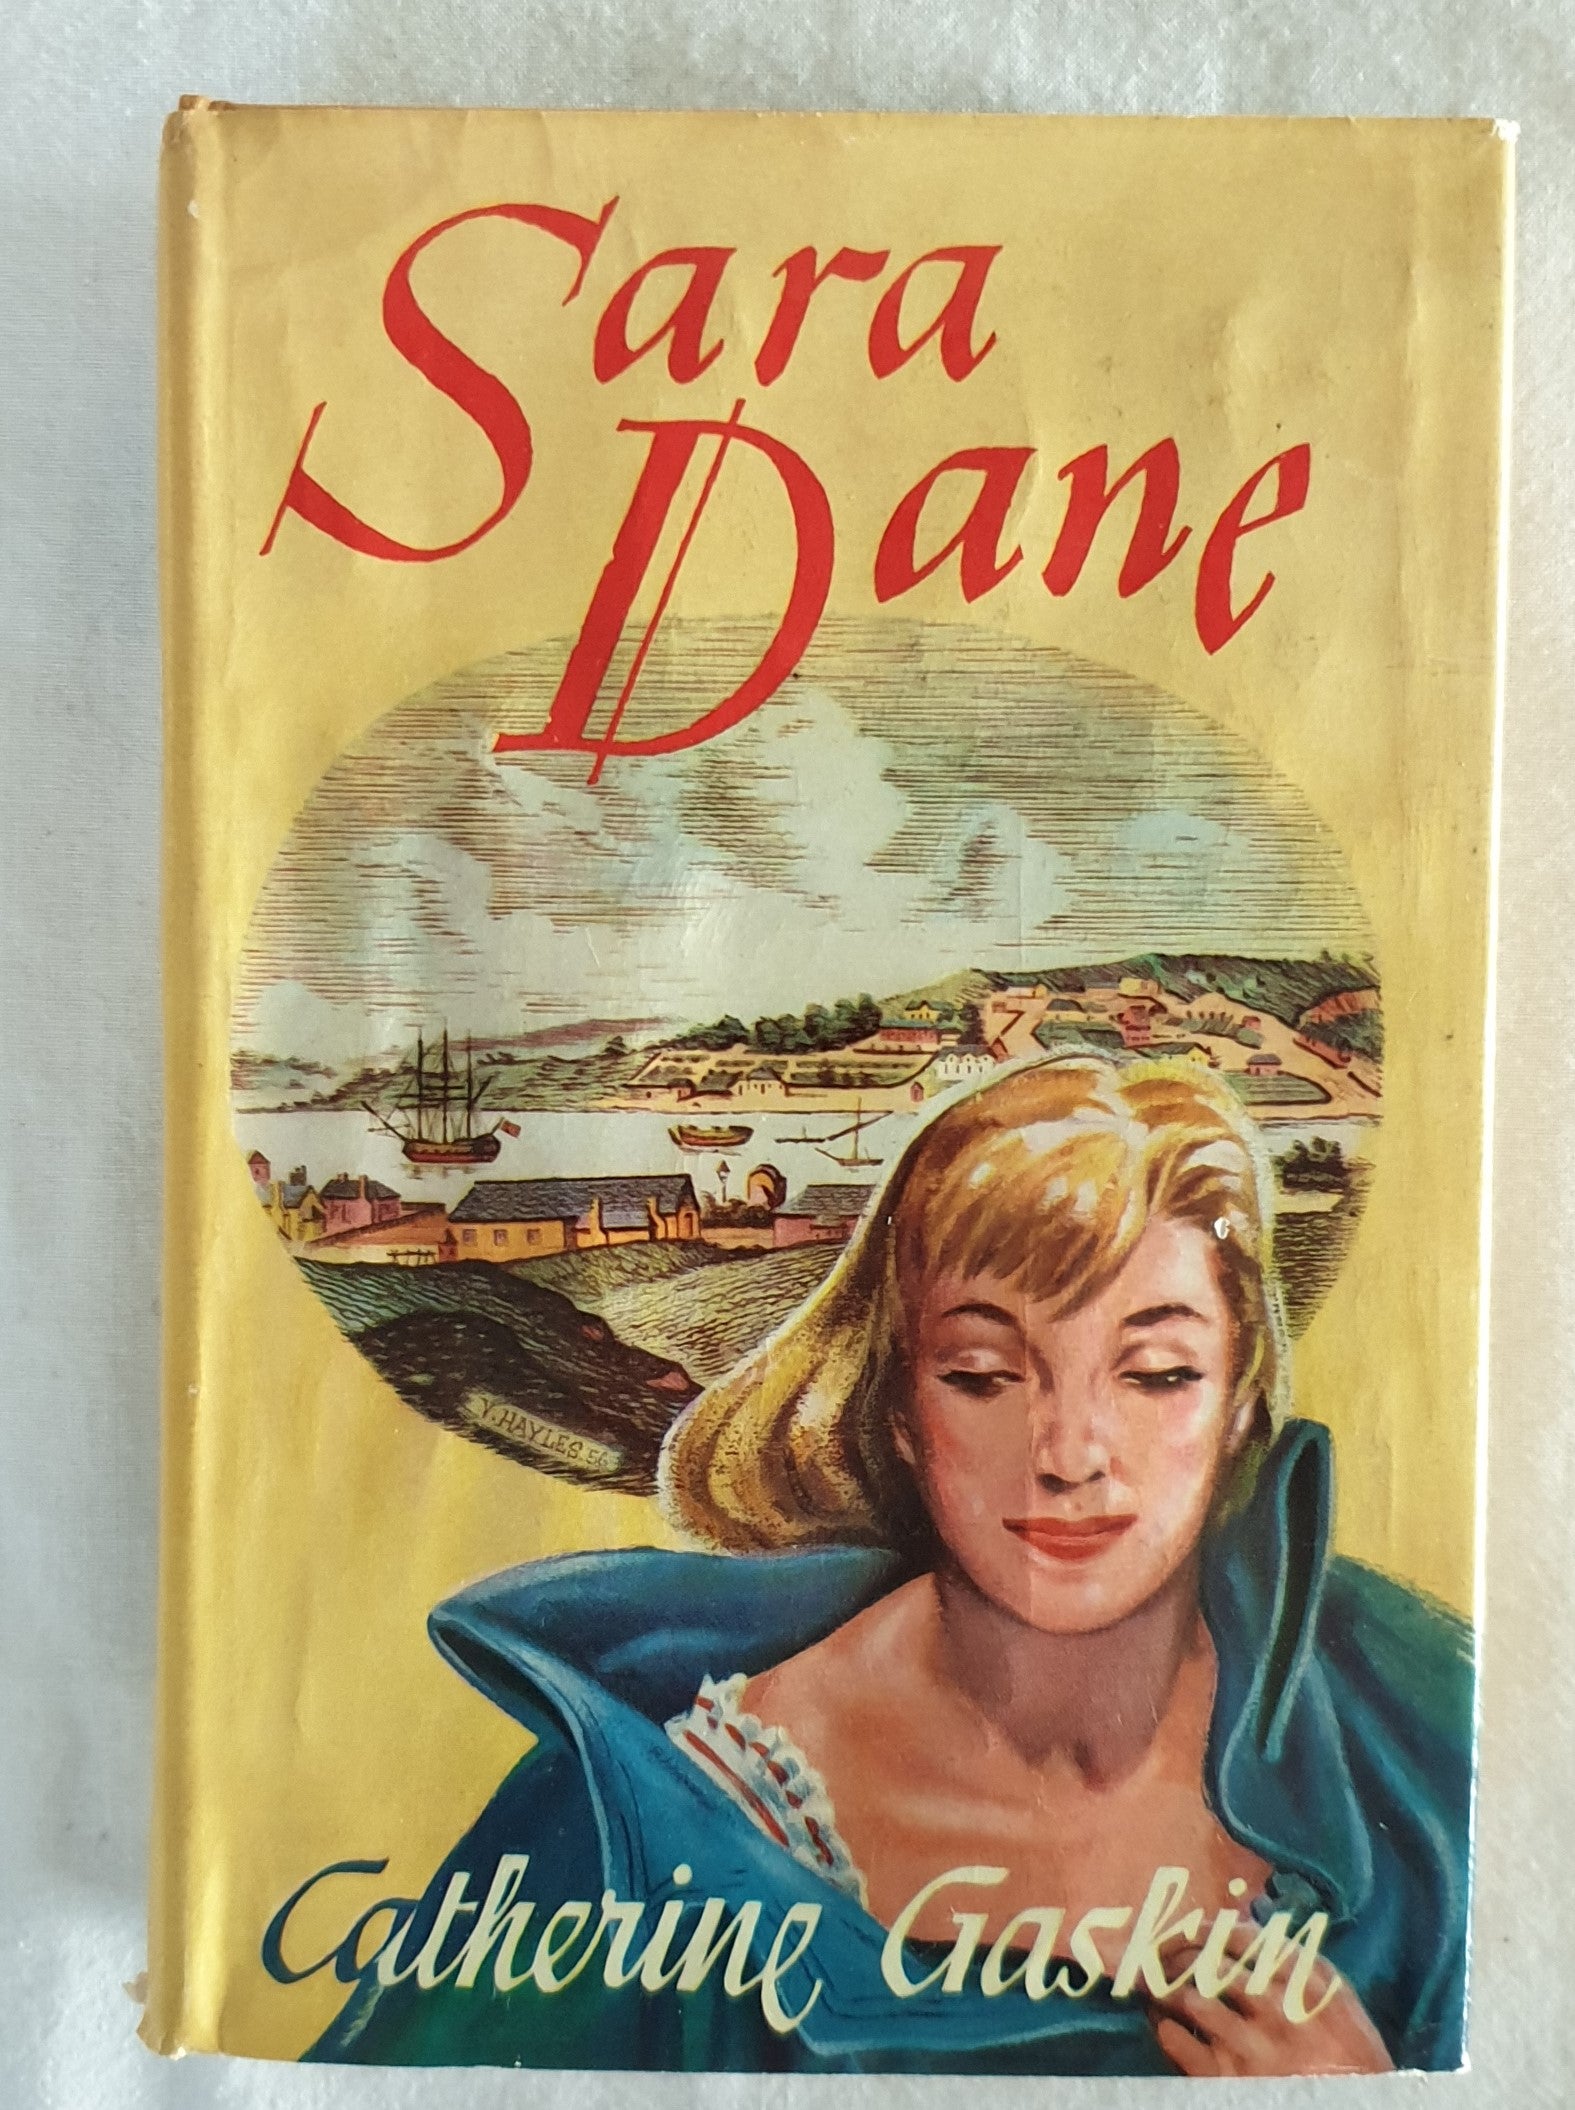 Sara Dane by Catherine Gaskin